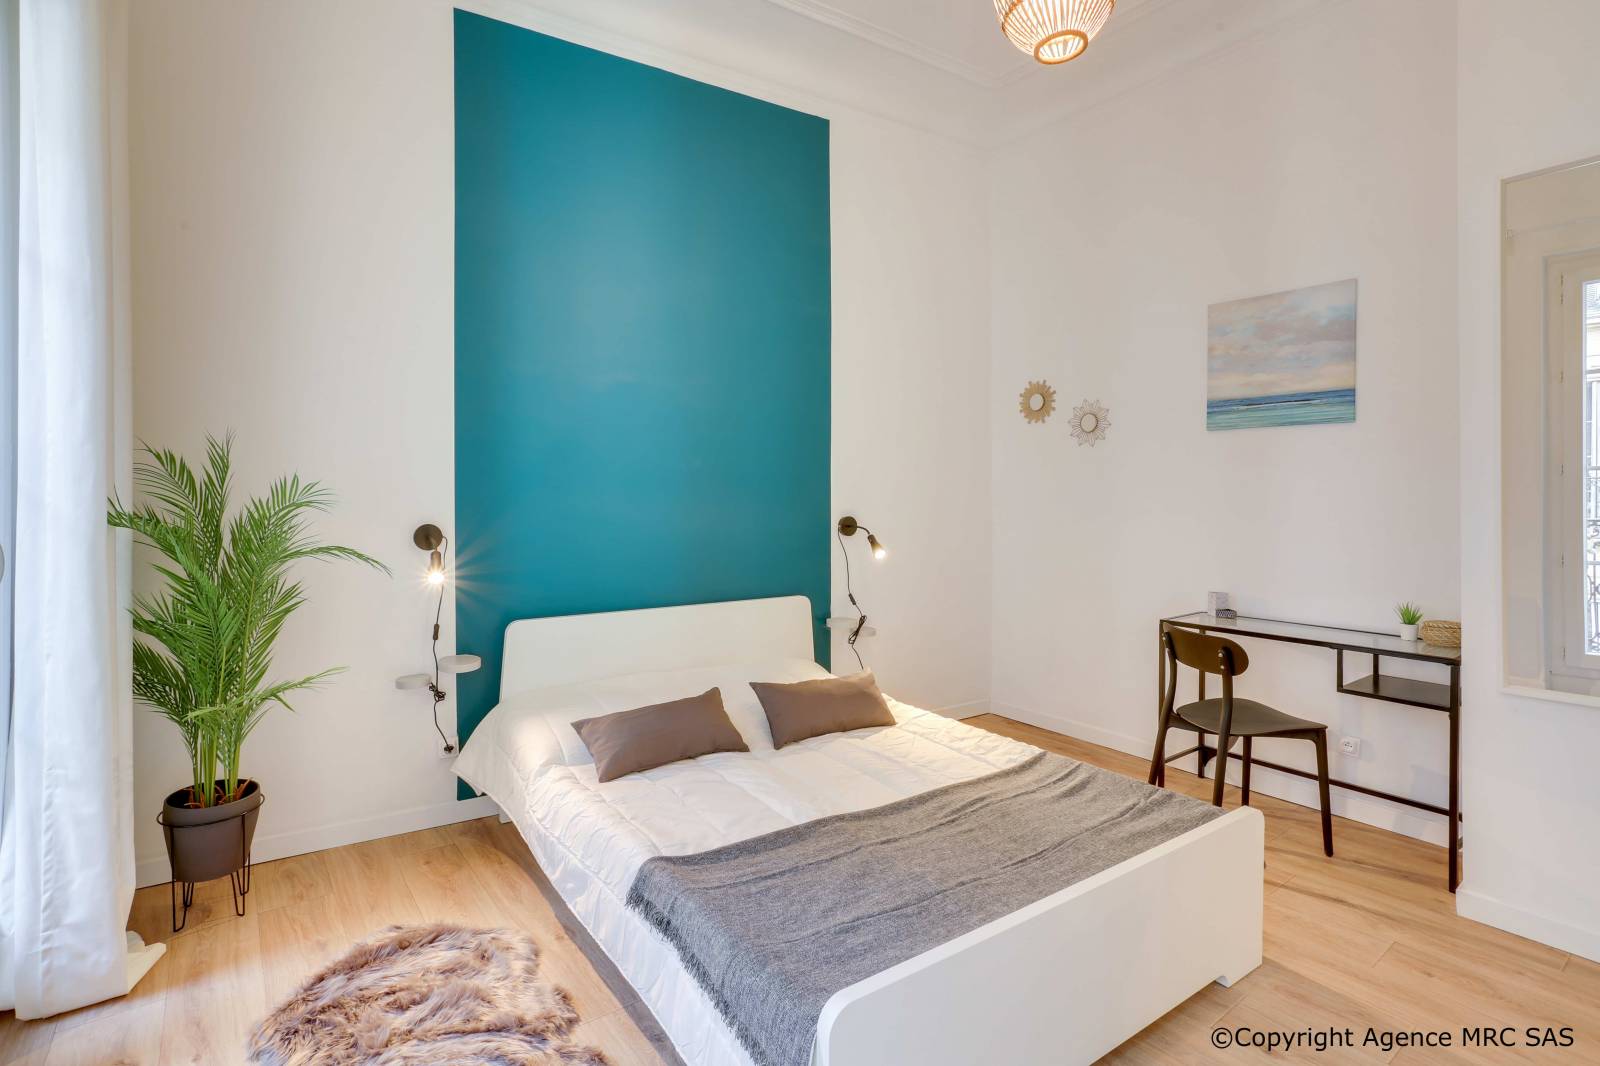 Travaux d’appartement pour investissement à usage locatif sur Marseille avec des architectes d’intérieur 13001